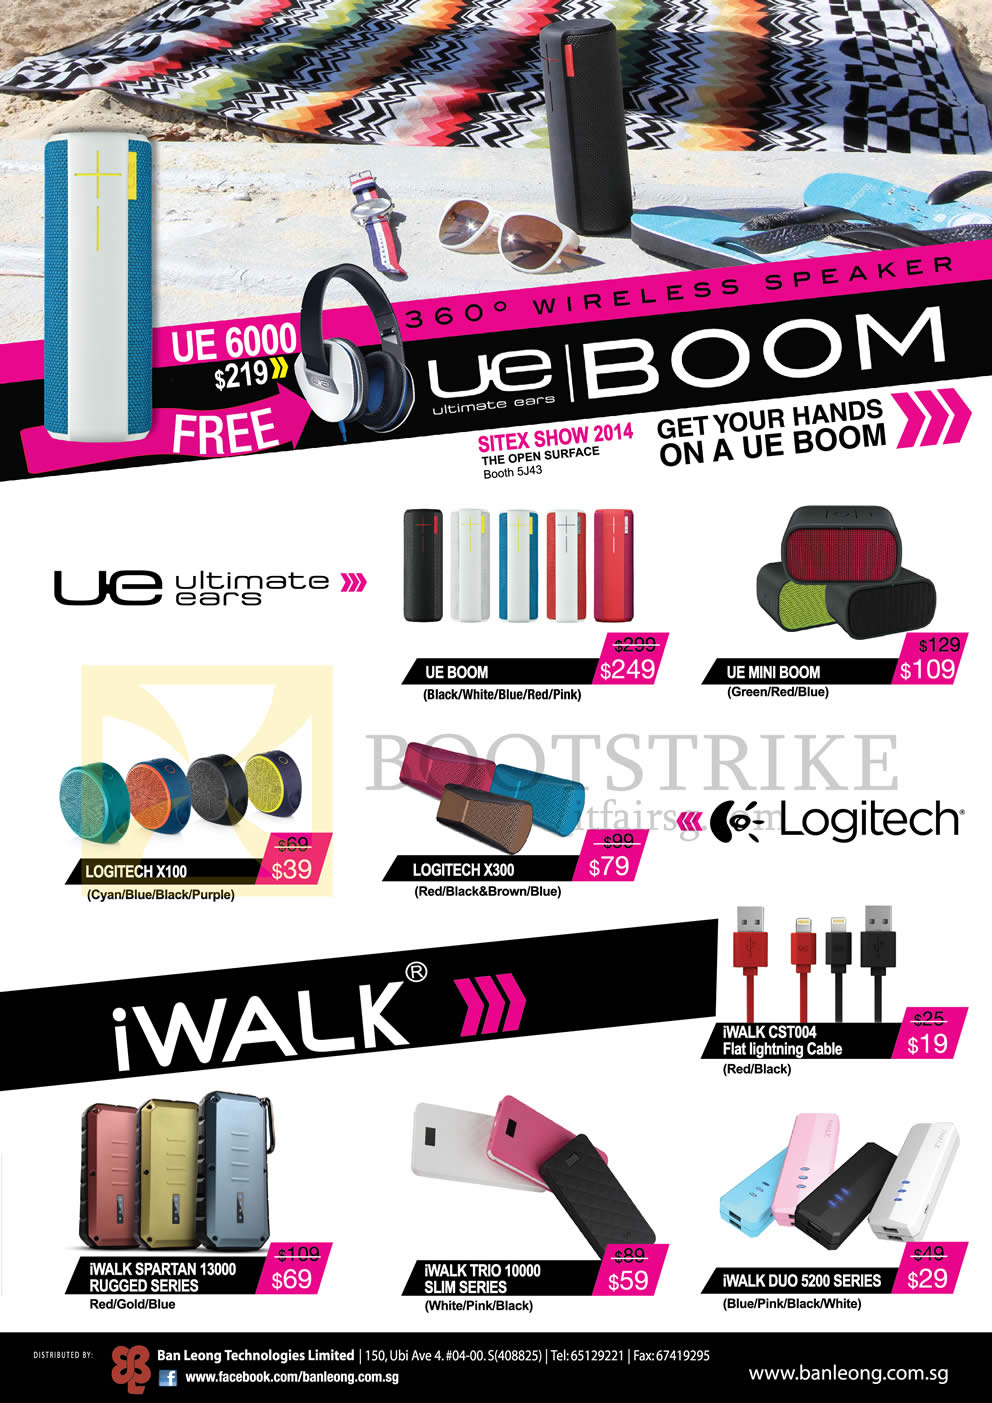 SITEX 2014 price list image brochure of Logitech Speakers, Power Banks, Ultimate Ears UE Boom, UE Mini Book, X300, X100, IWalk Spartan 13000, Trio 10000, Duo 5200 Series